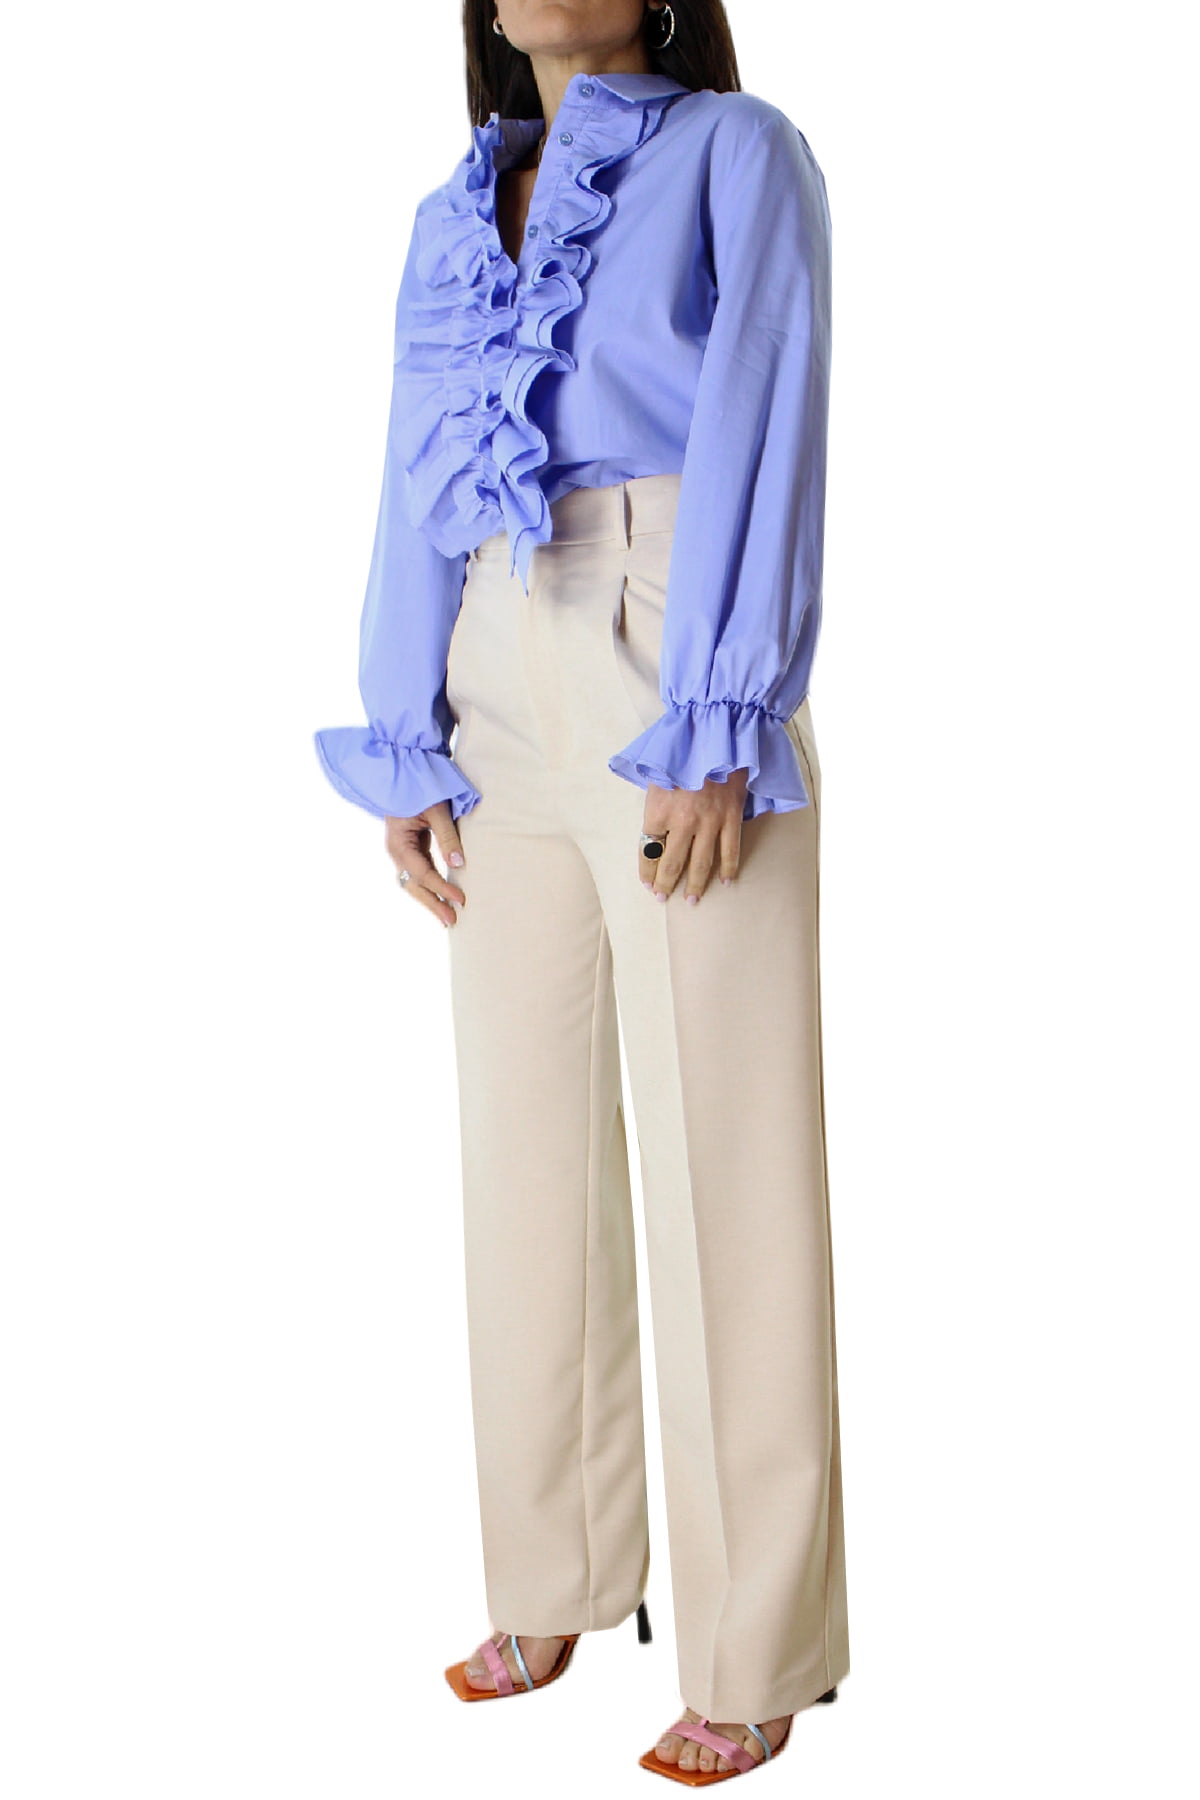 Camicia donna in cotone morbido con rouches davanti e polso vestibilita comoda